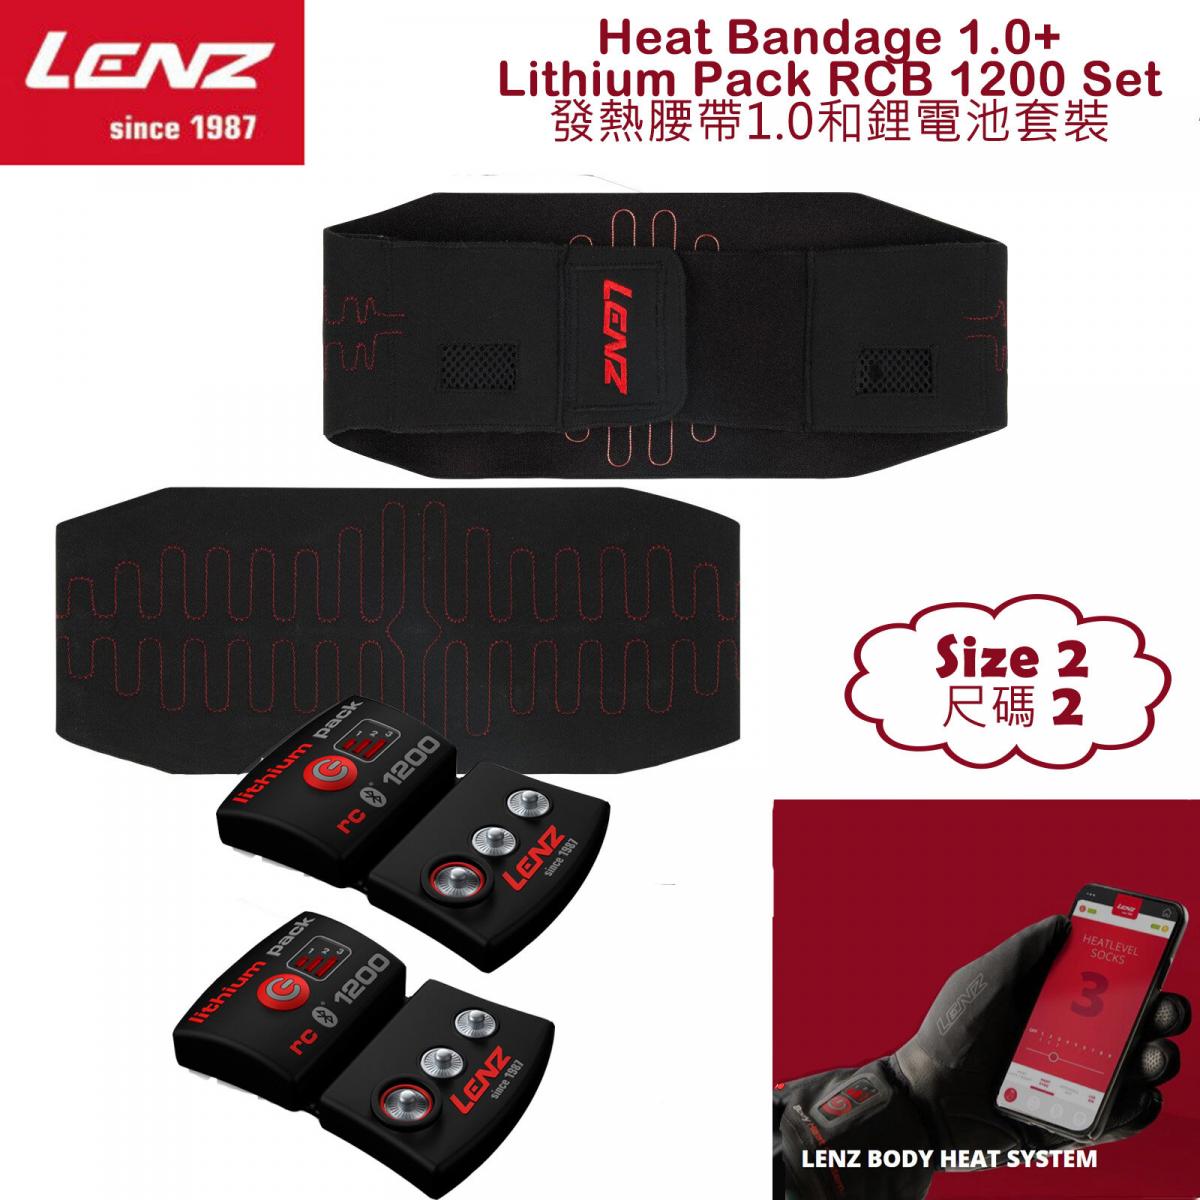 Heat Bandage 1.0 and Lithium Pack Rcb 1200 Set Size 2